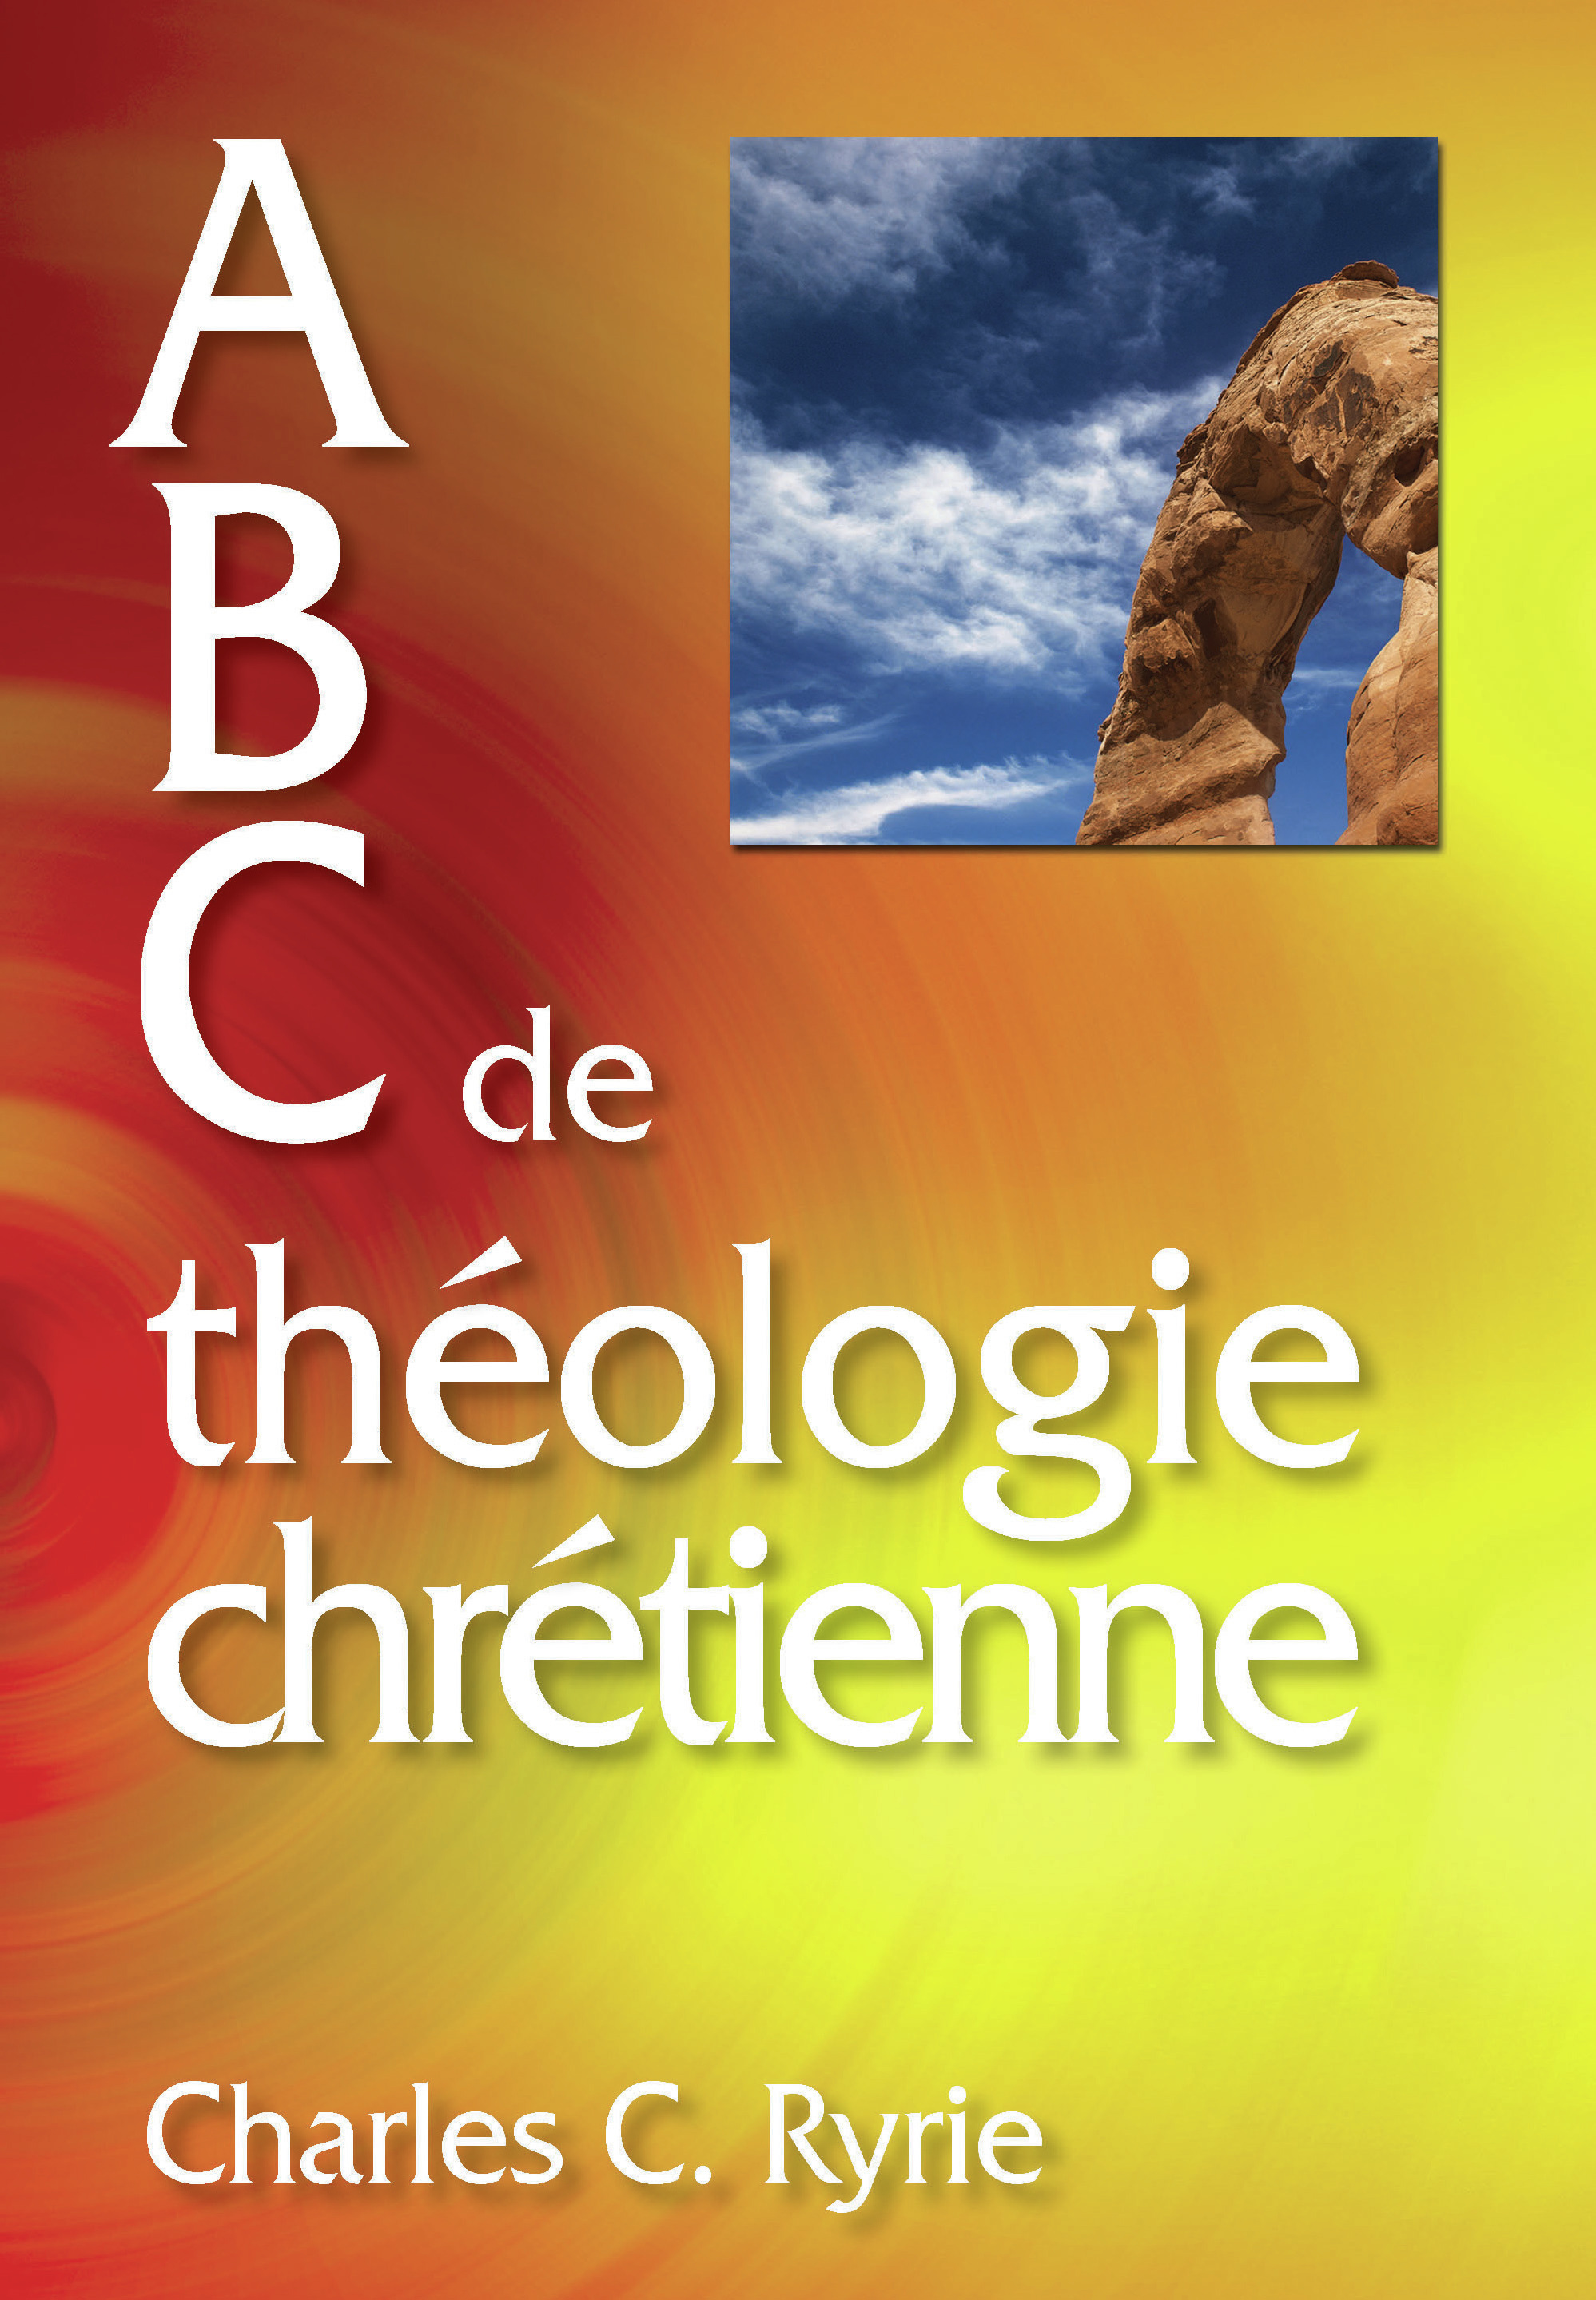 ABC de théologie chrétienne [pdf]